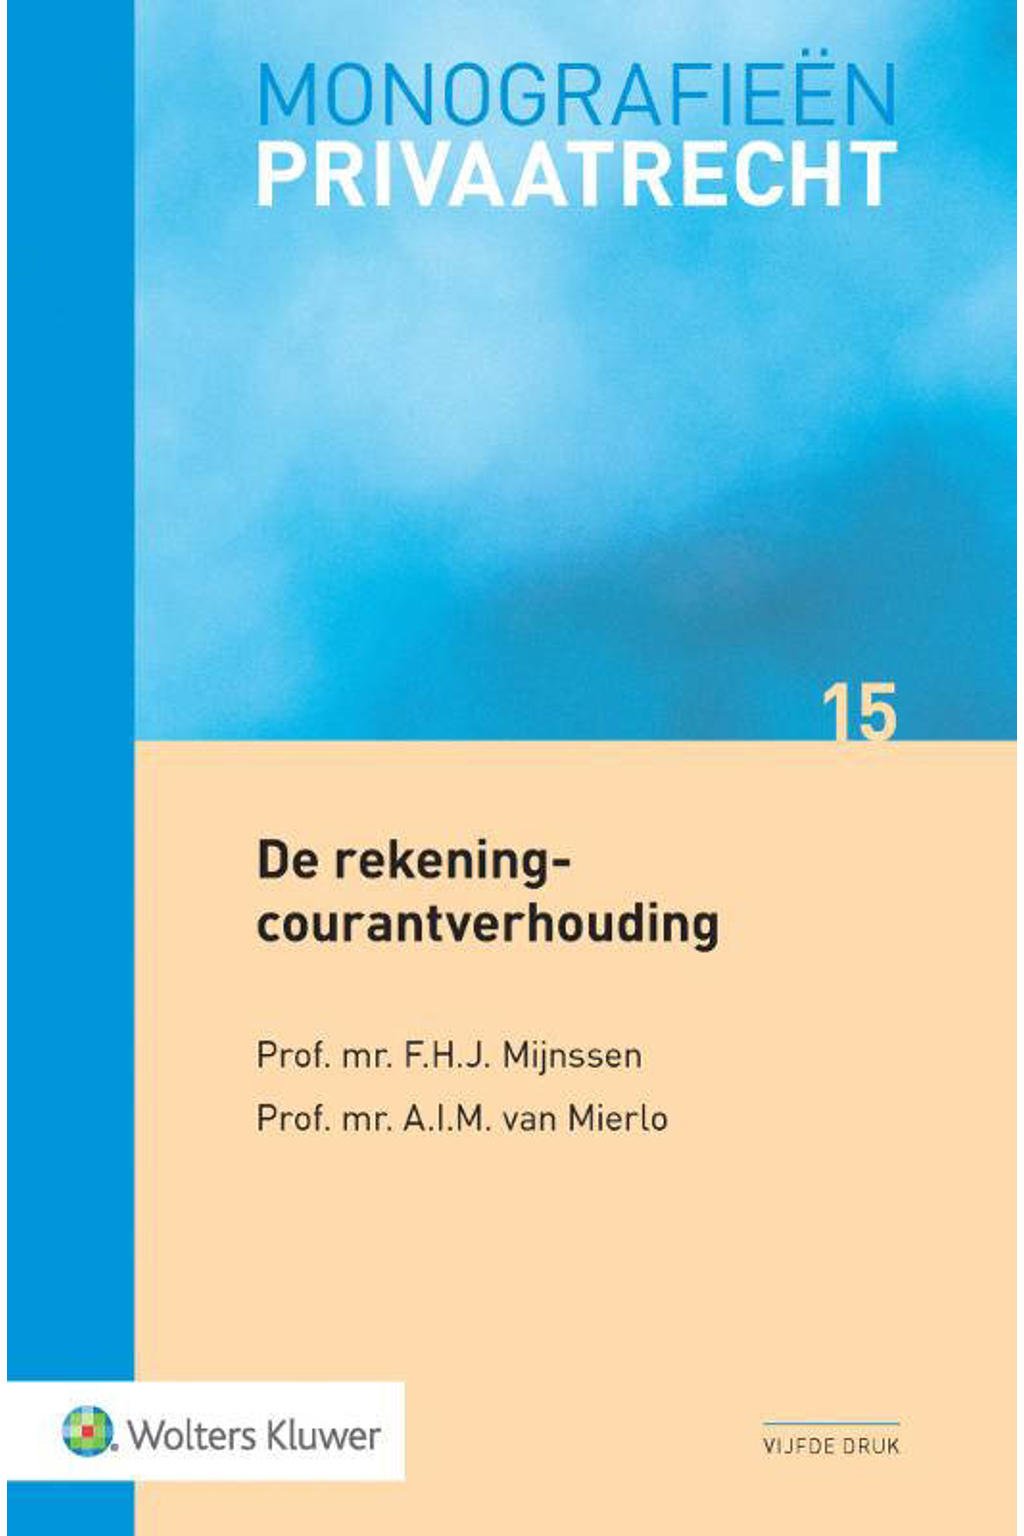 Monografieen Privaatrecht: De rekening-courantverhouding - F.H.J. Mijnsen en A.I.M. van Mierlo